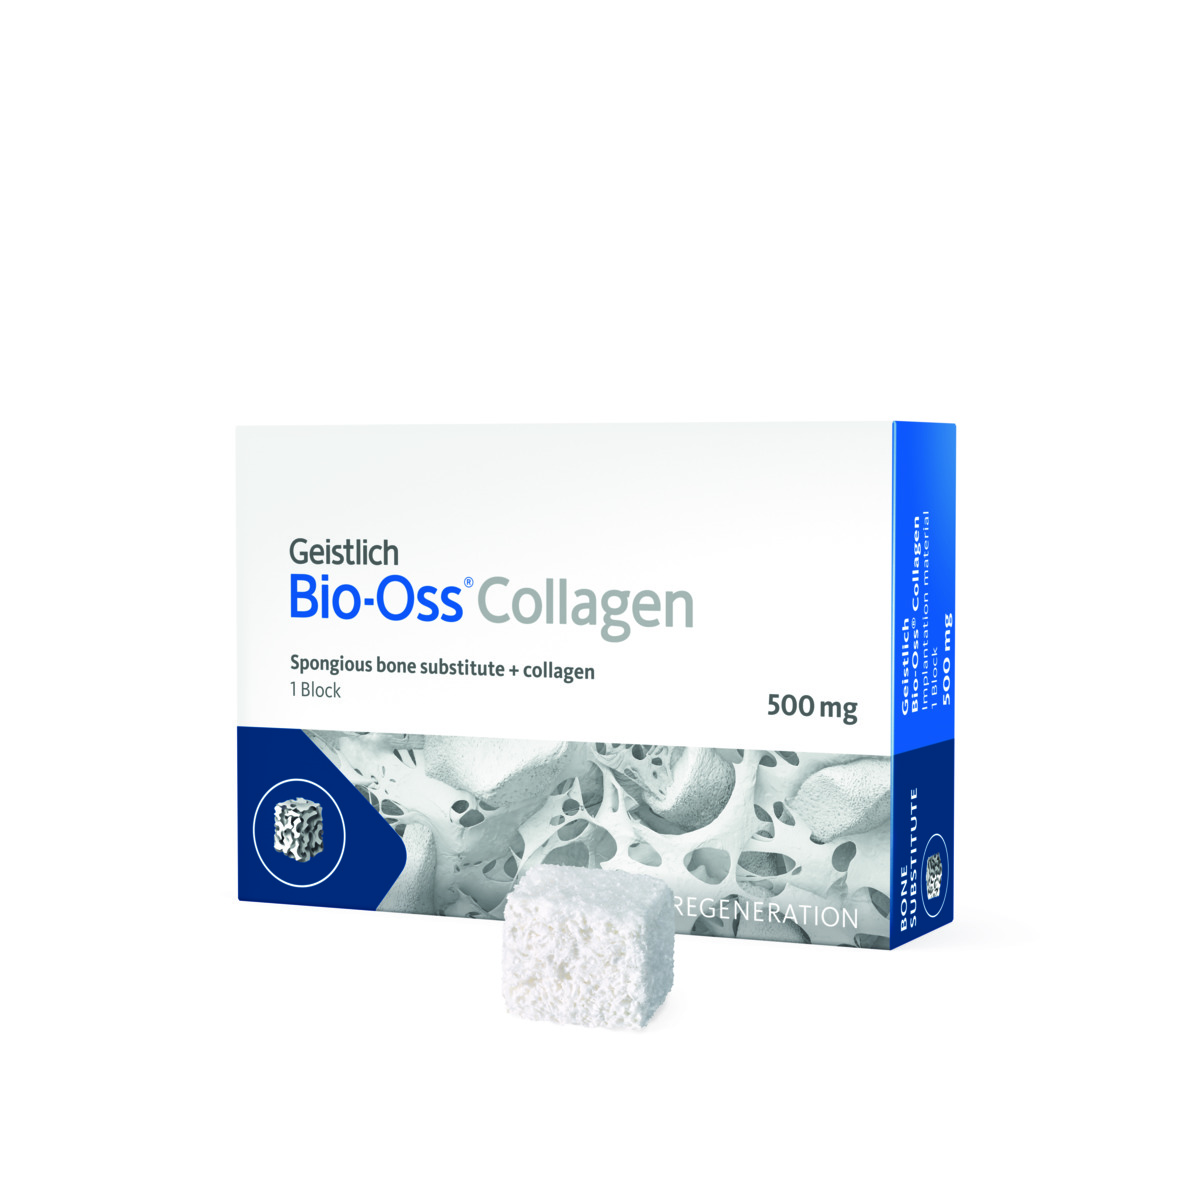 Geistlich Bio-Oss Collagen 500 mg